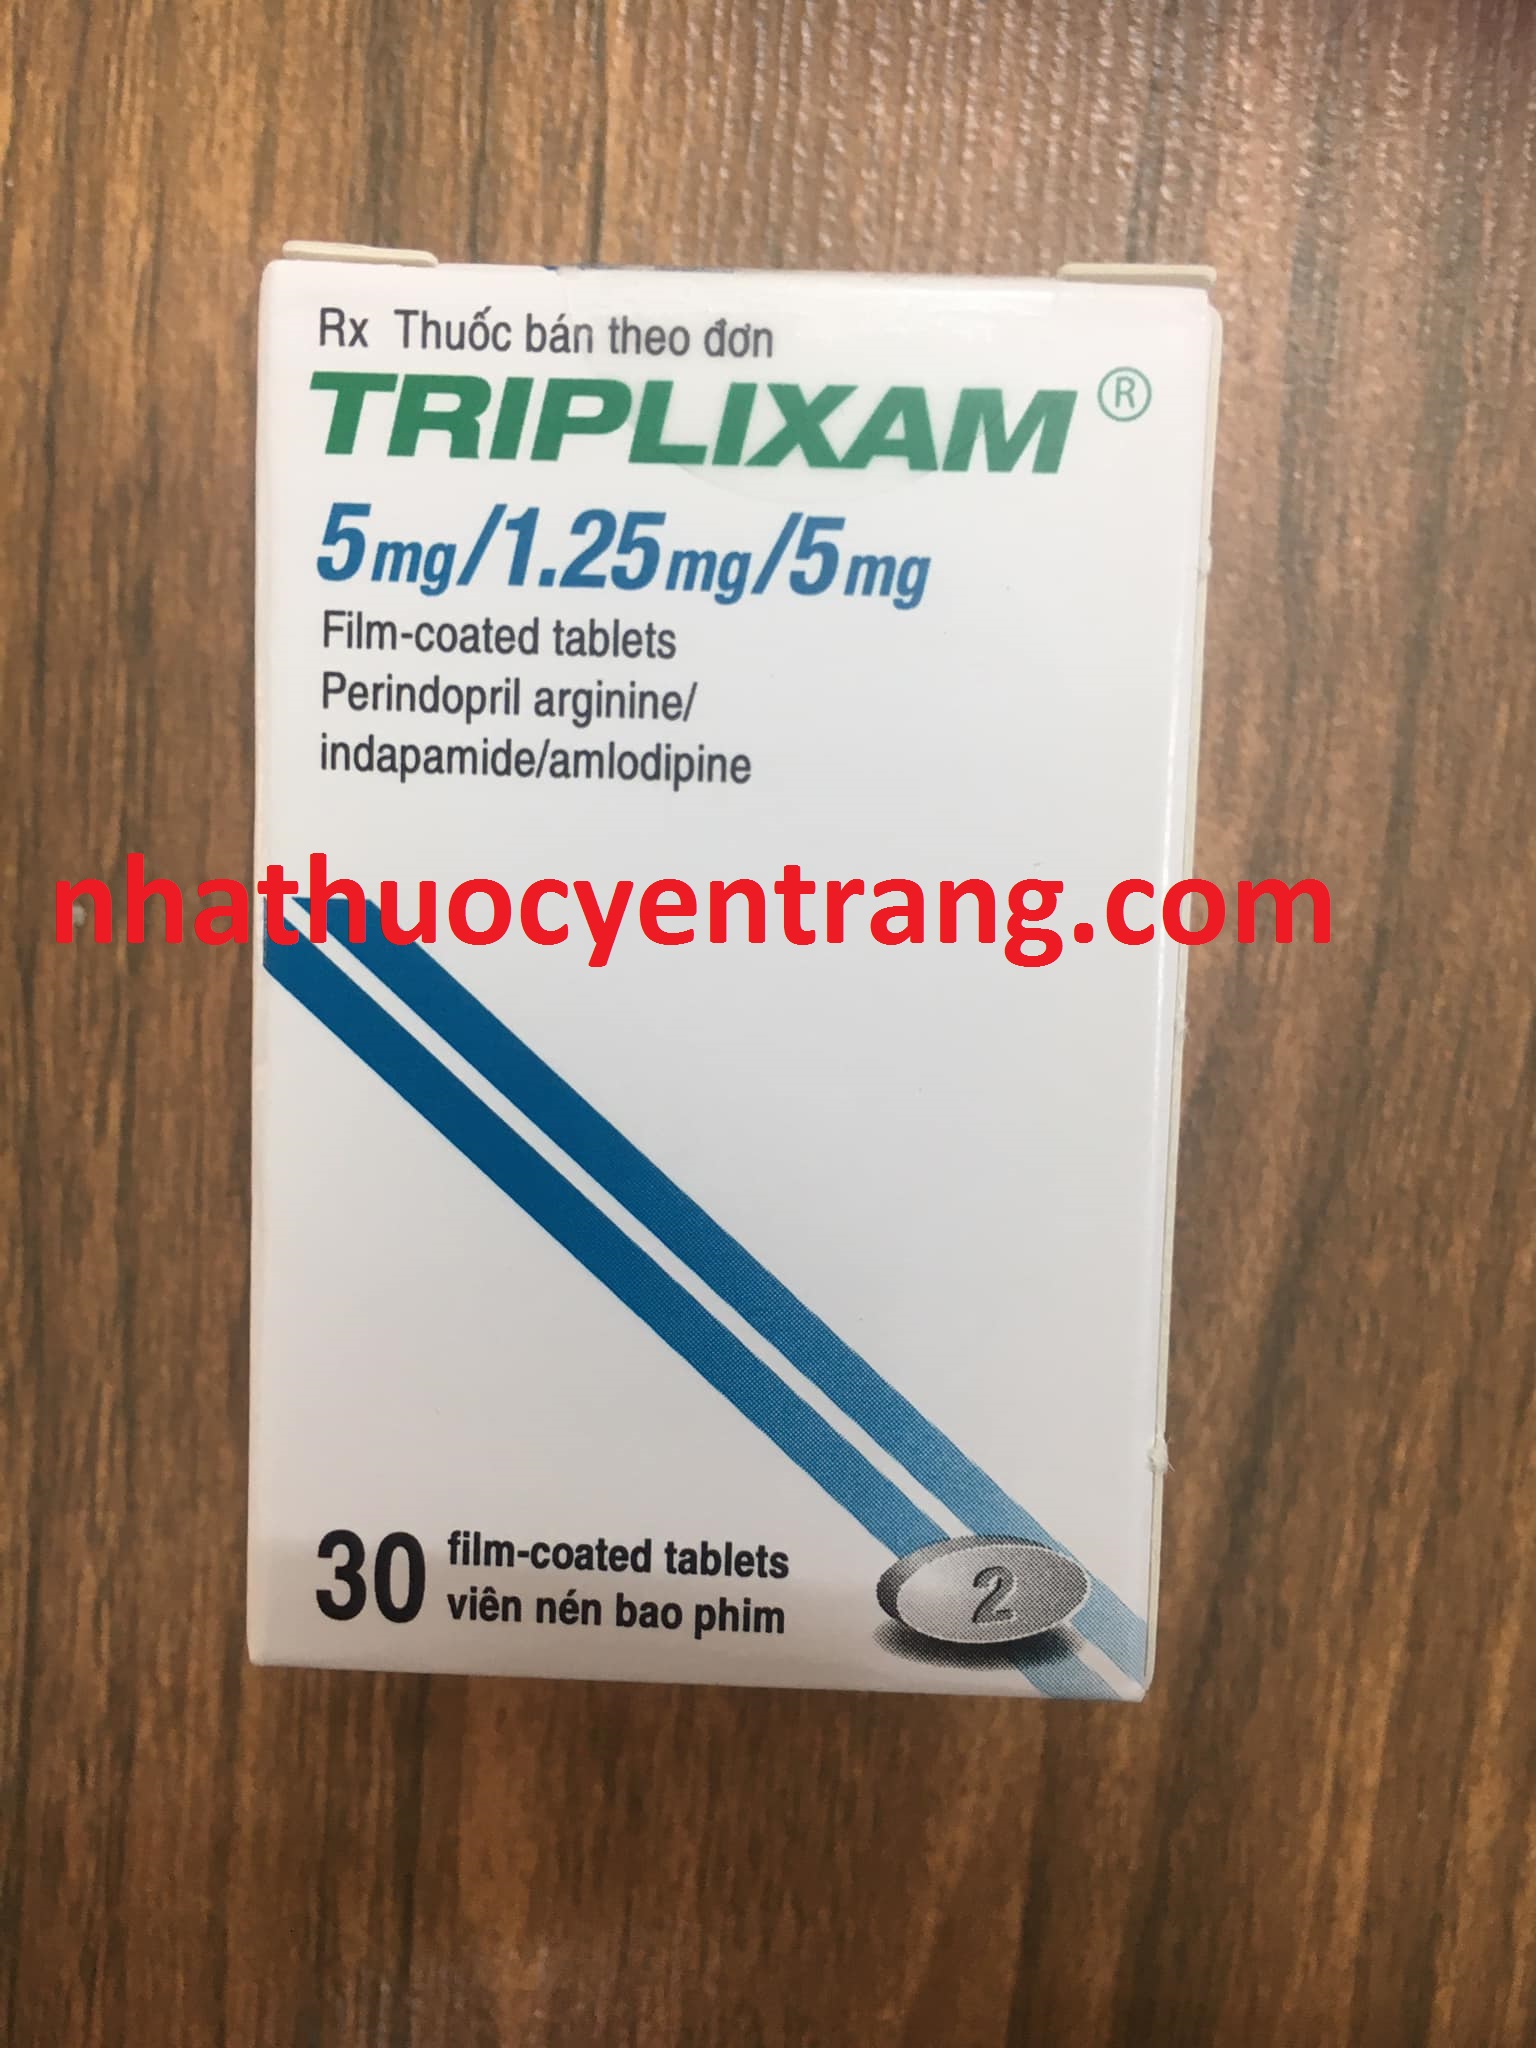 Triplixam 5/1.25/5 mg